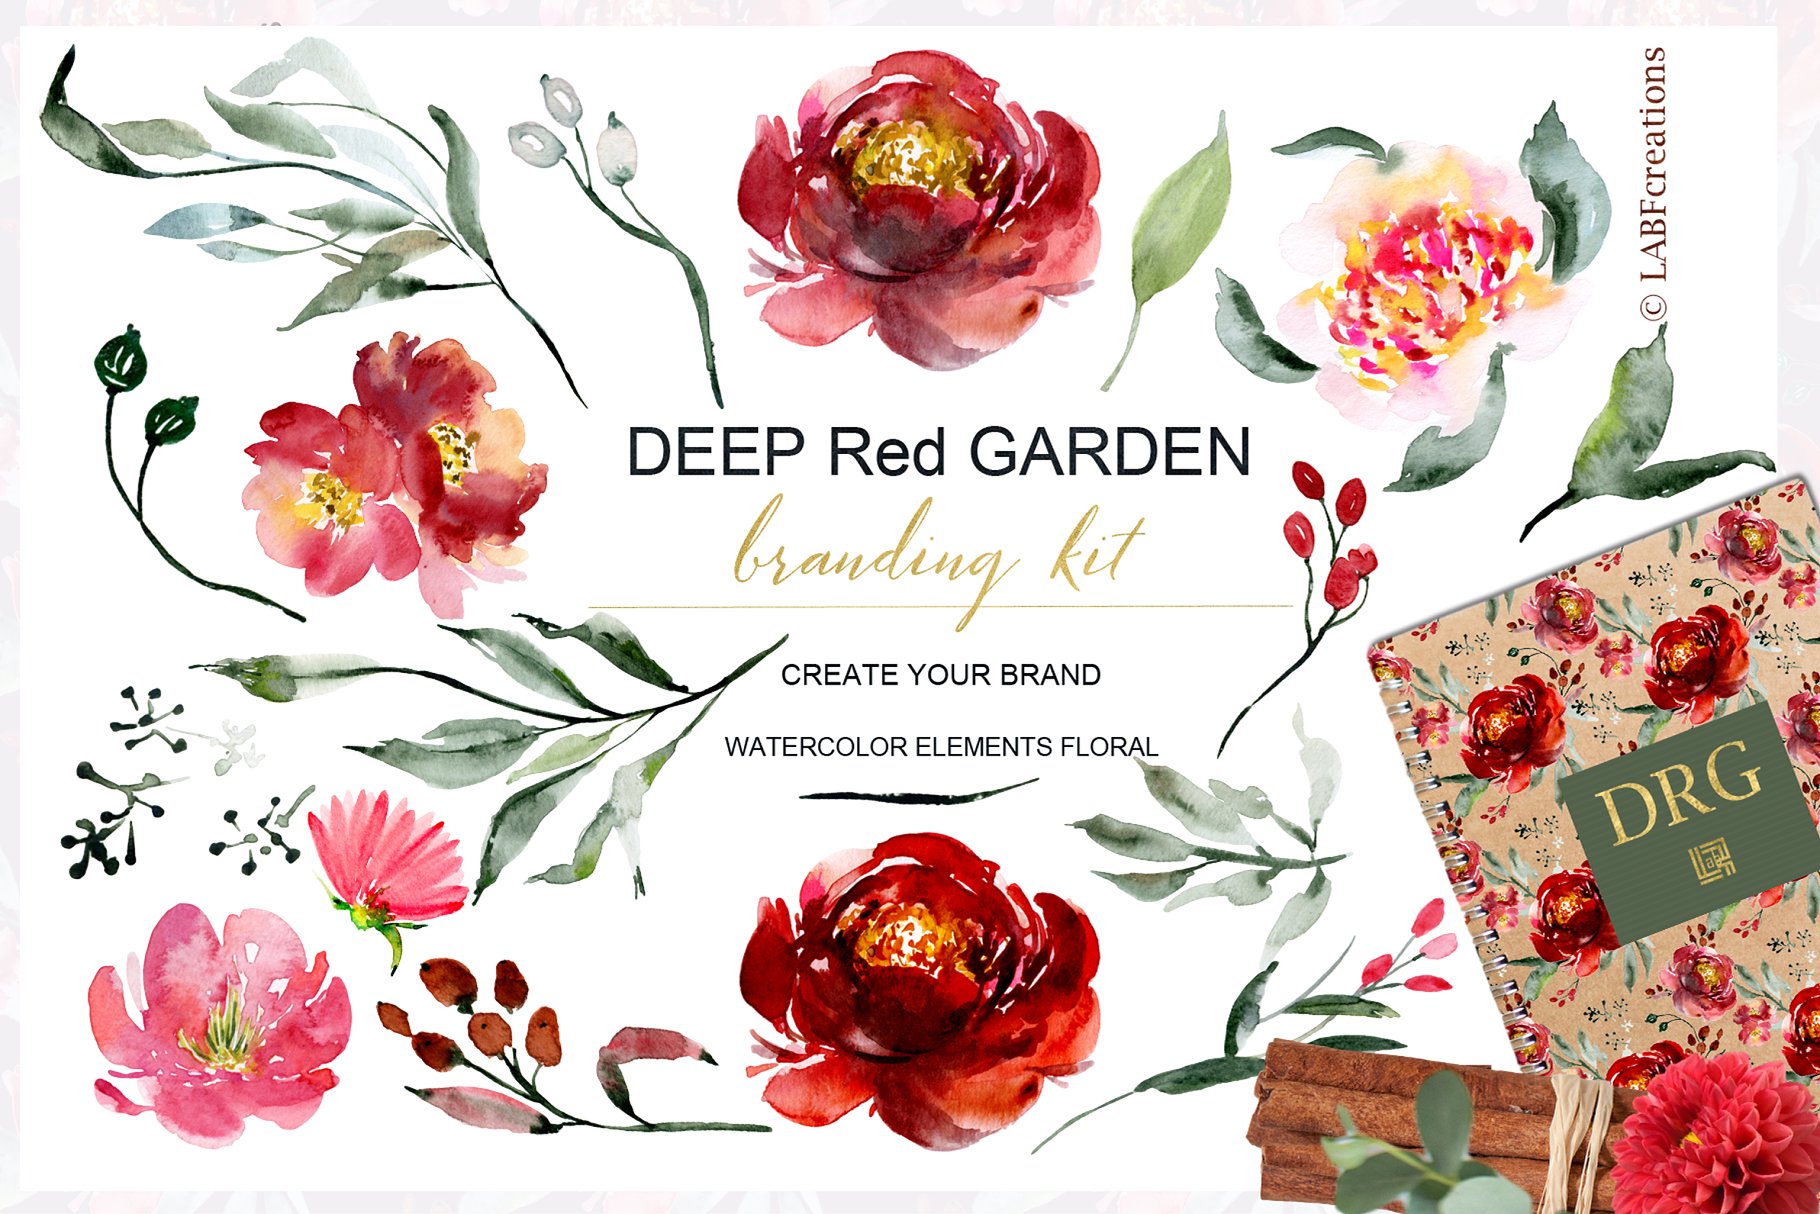 深红色水彩花卉元素 Deep red garden. Branding kit.插图(4)